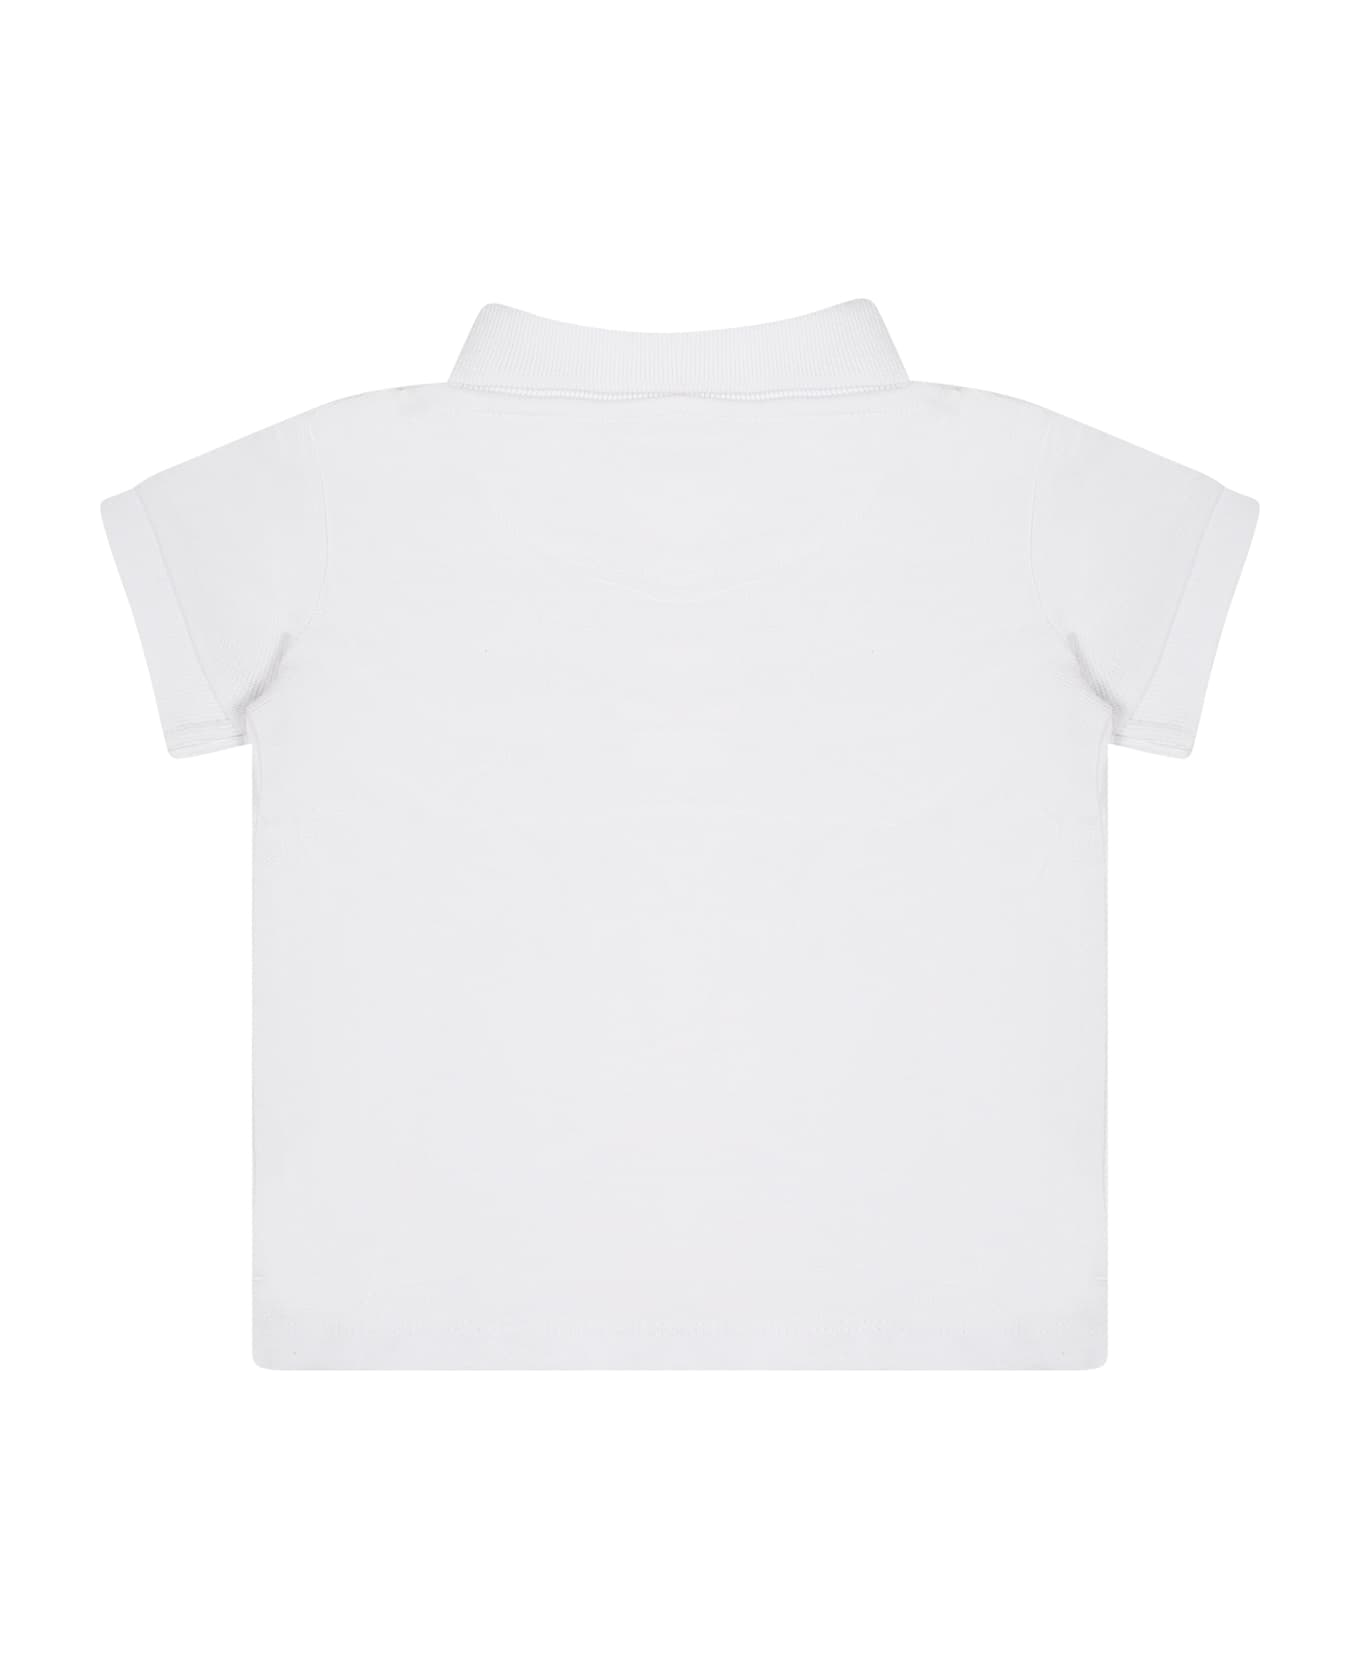 Calvin Klein White Polo Shirt For Baby Boy With Logo - White